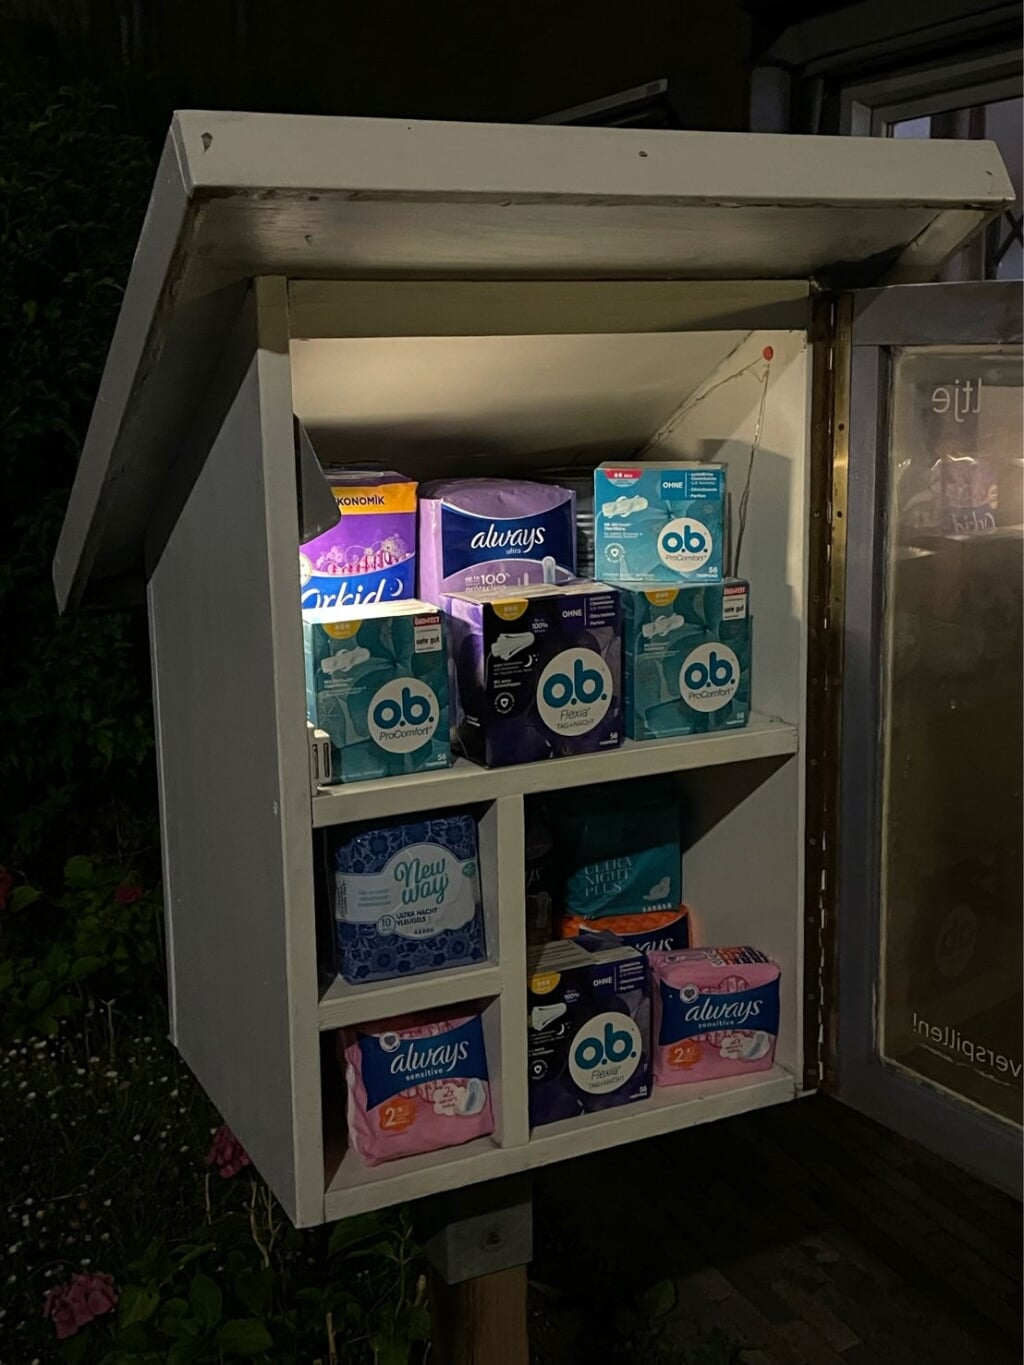 Het kastje in Wheermolen staat vol met menstruatieproducten.